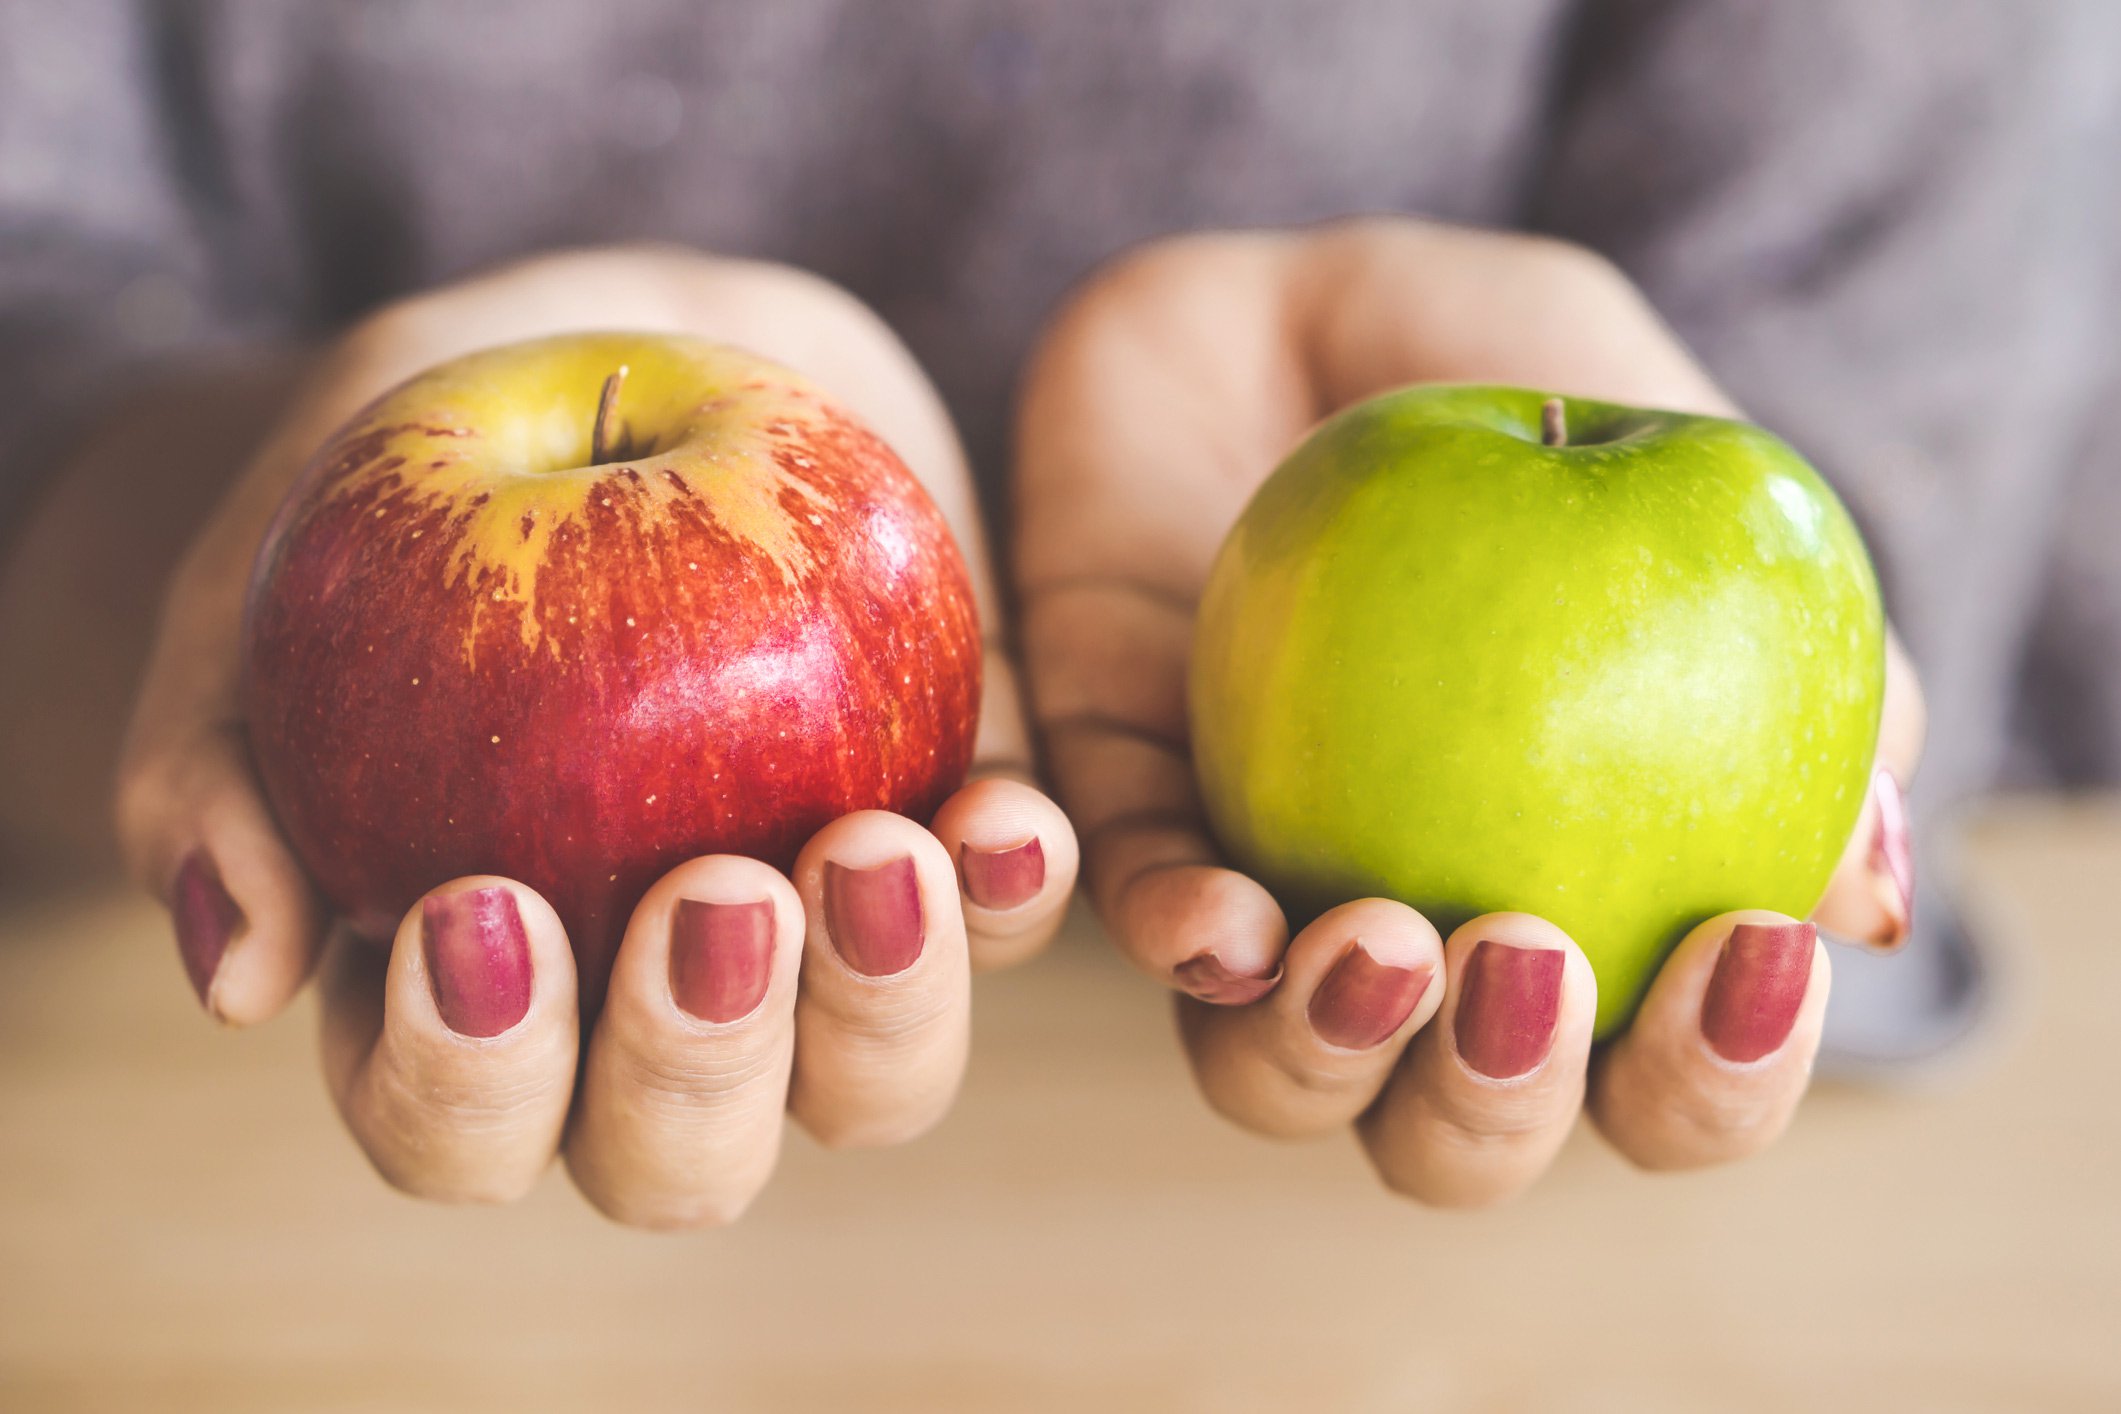 Top detoxifying foods: Apples